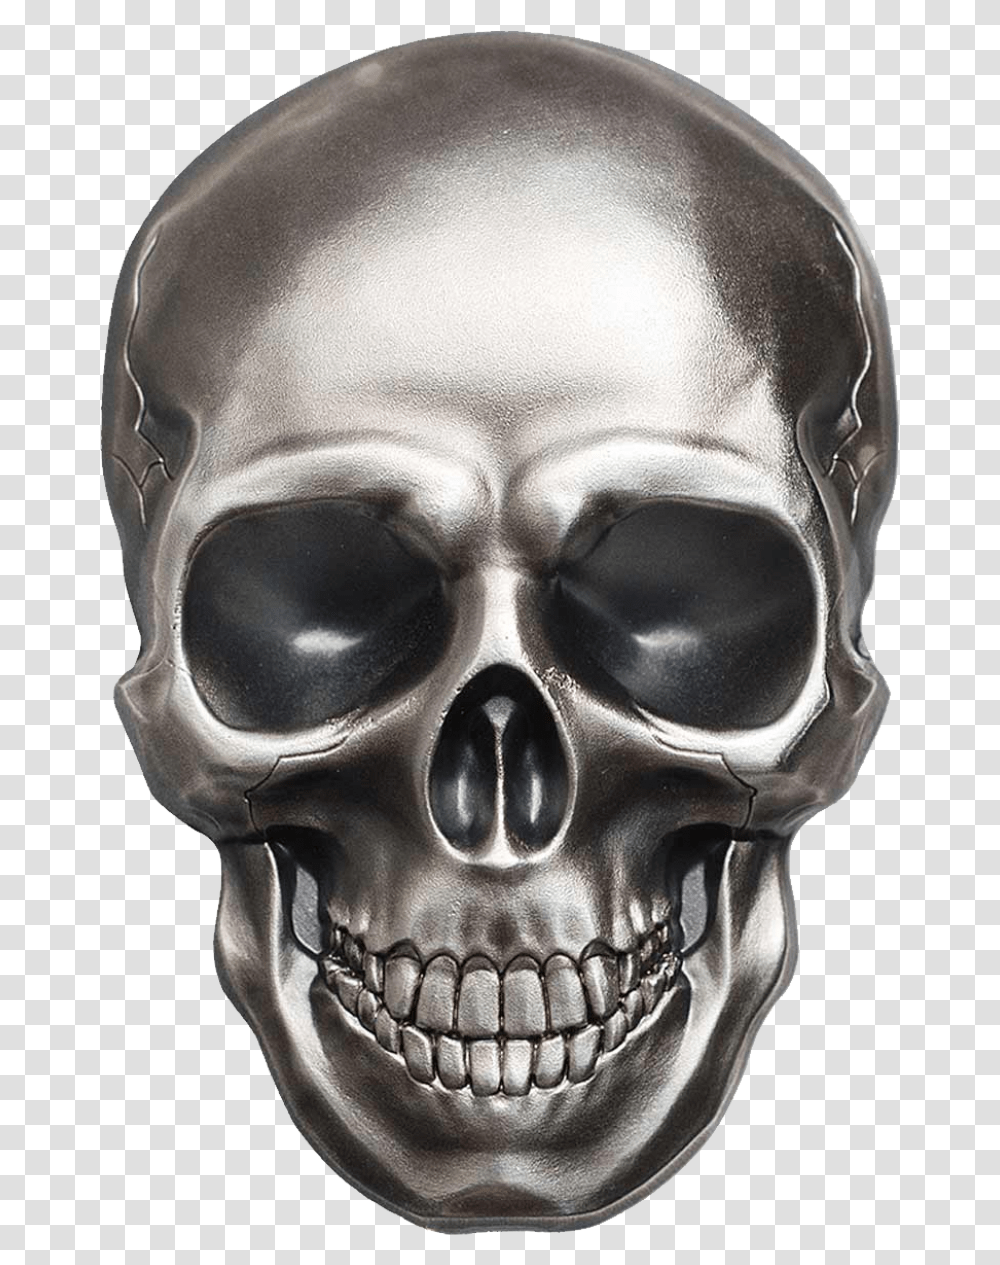 Skull Silver Skull, Helmet, Apparel, Head Transparent Png